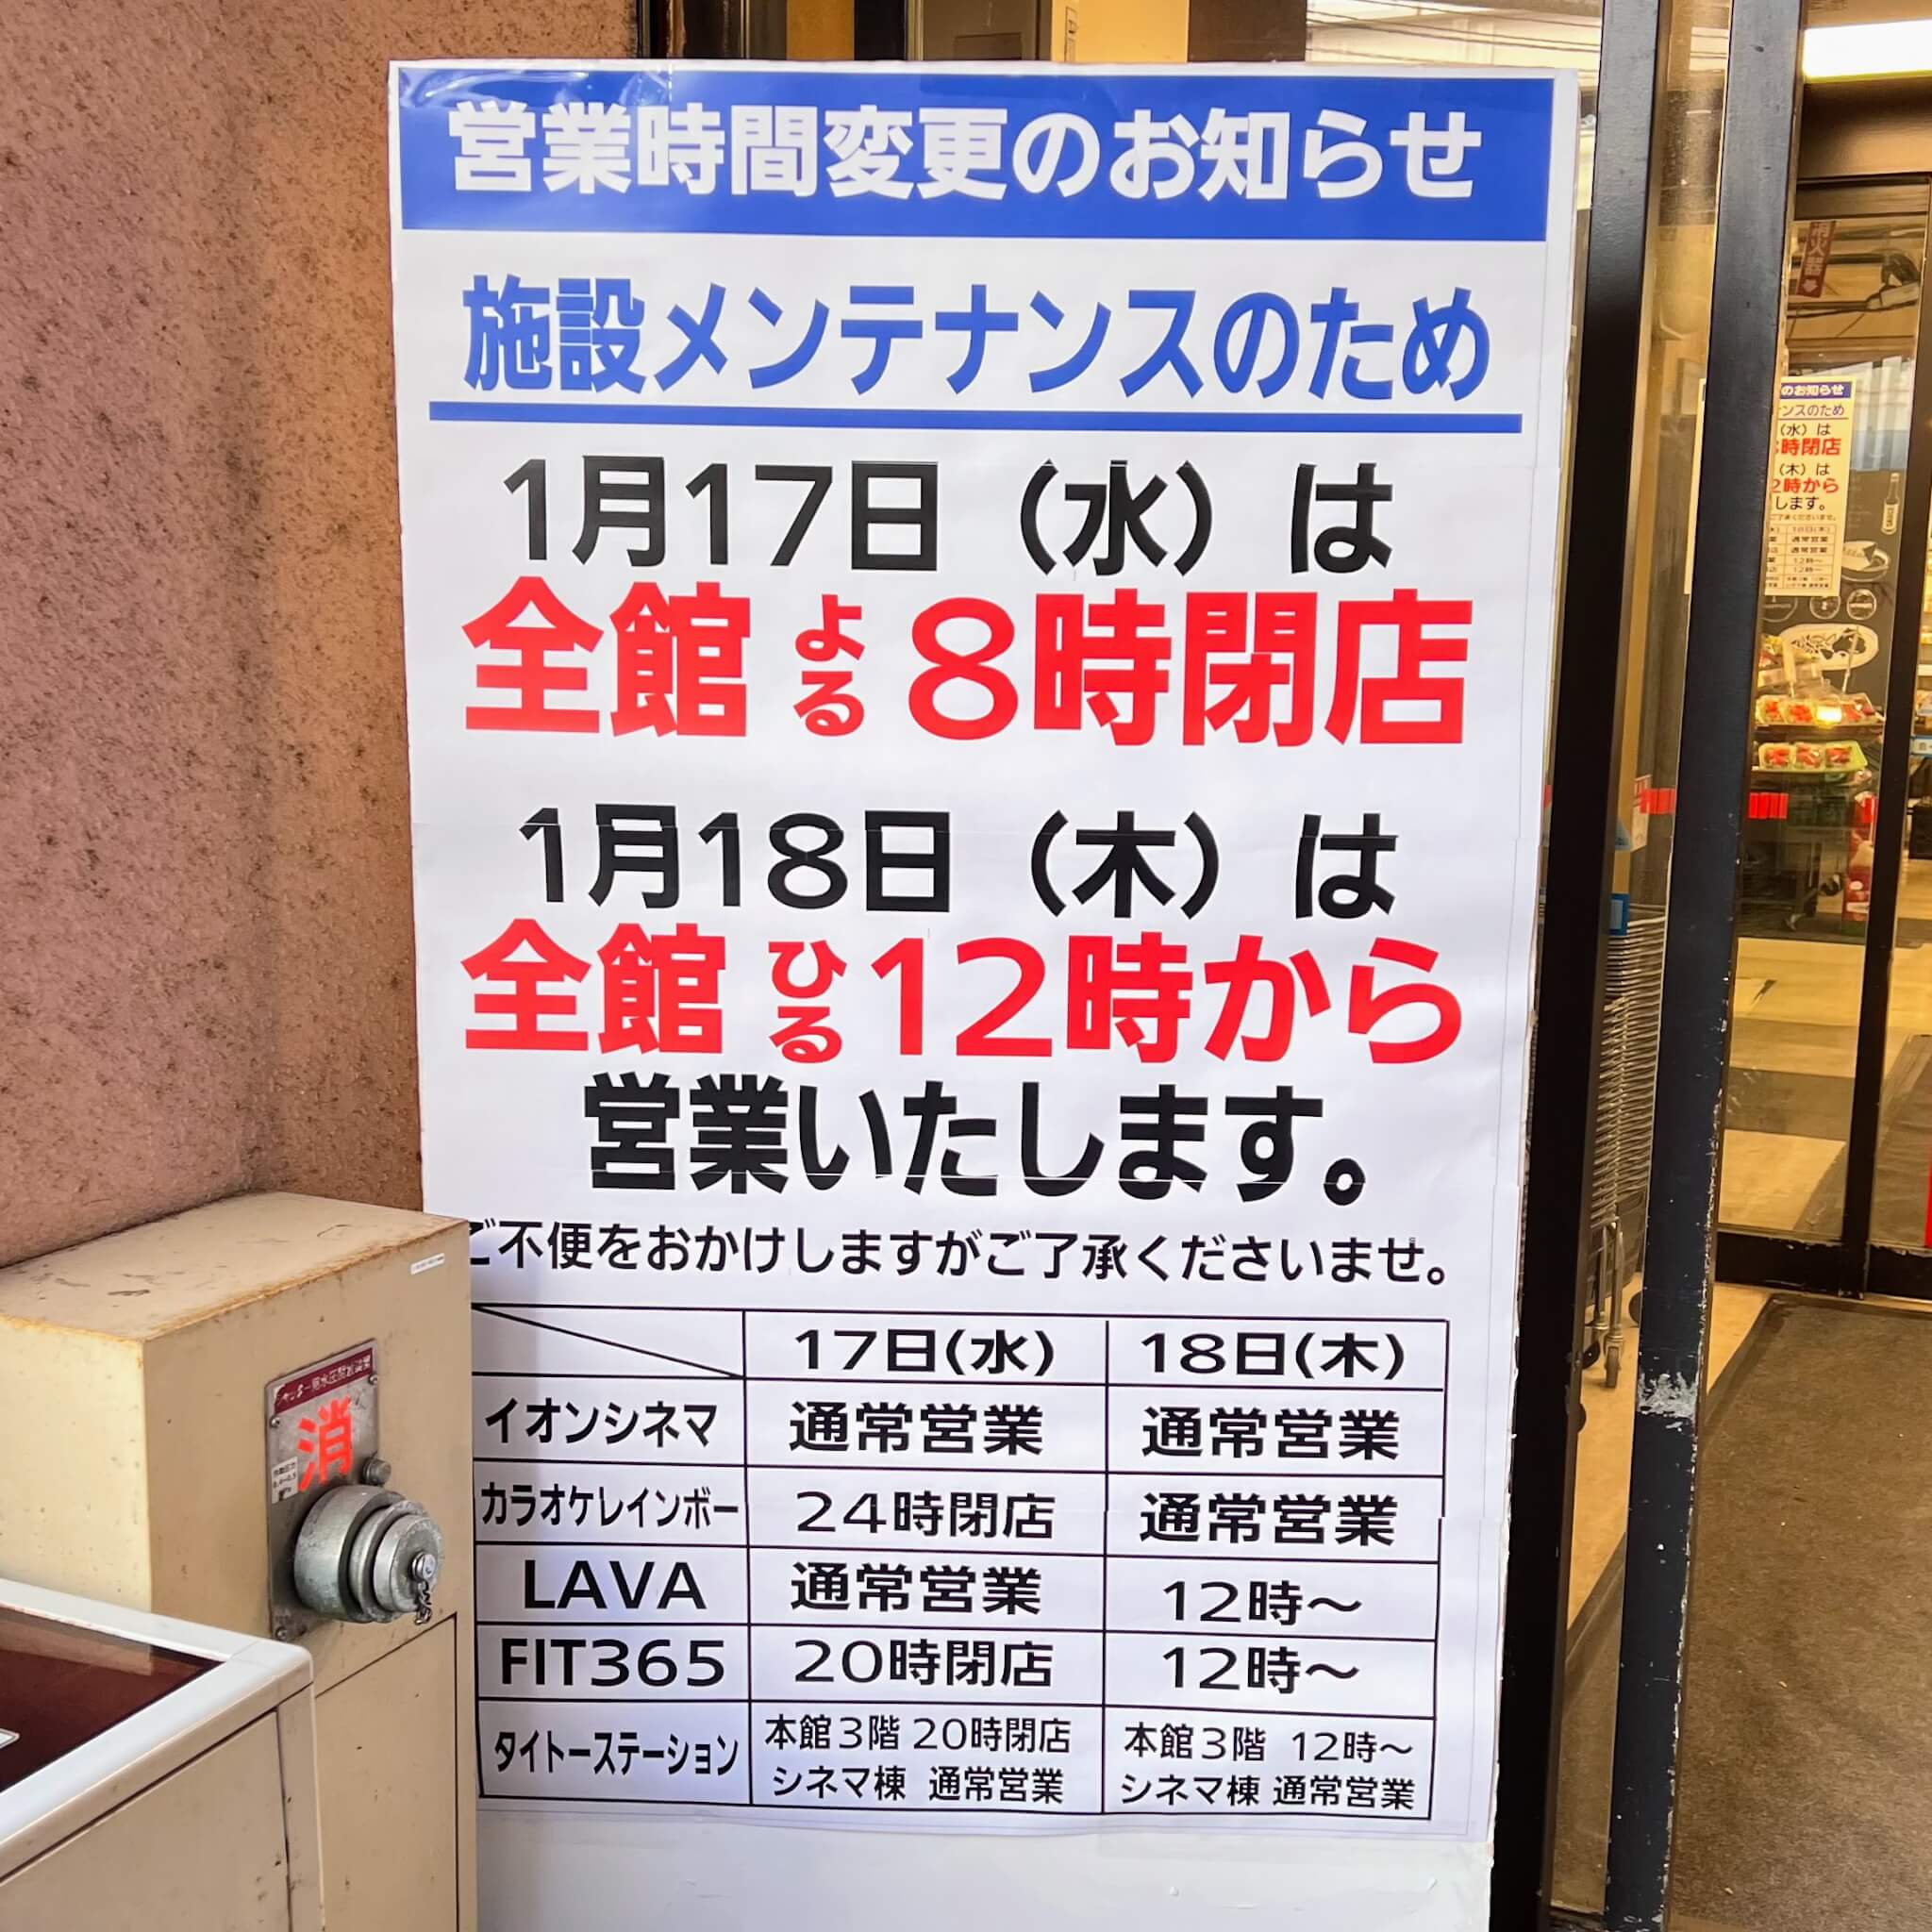 イオン加古川店の施設メンテナンスに伴う営業時間変更のお知らせ